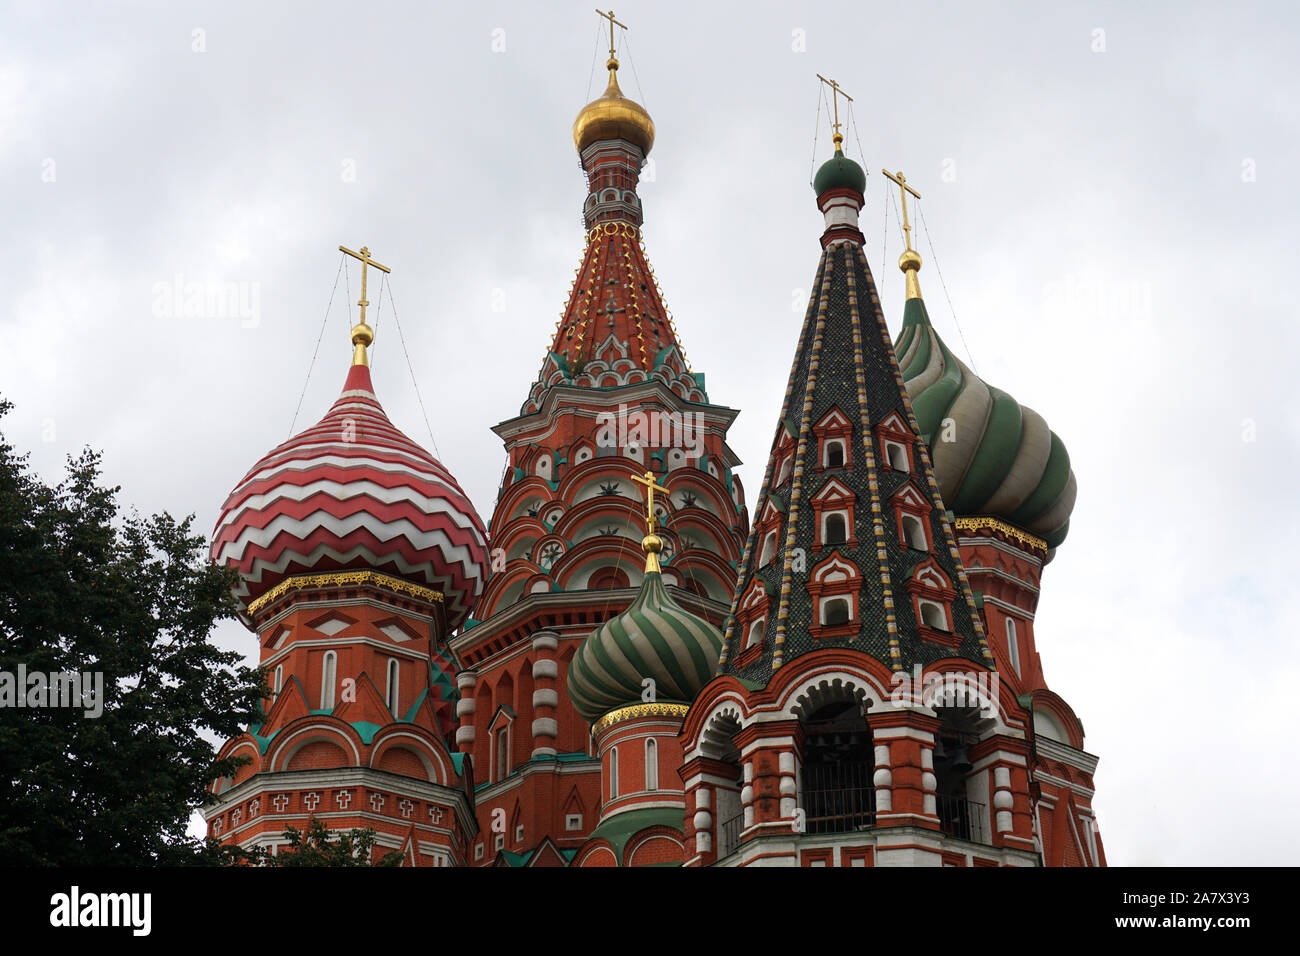 Die Kathedrale von Vasily dem gesegnet, wie Basilius-kathedrale bekannt, ist eine Kirche auf dem Roten Platz in Moskau und gilt als Symbol des Landes angesehen. Stockfoto